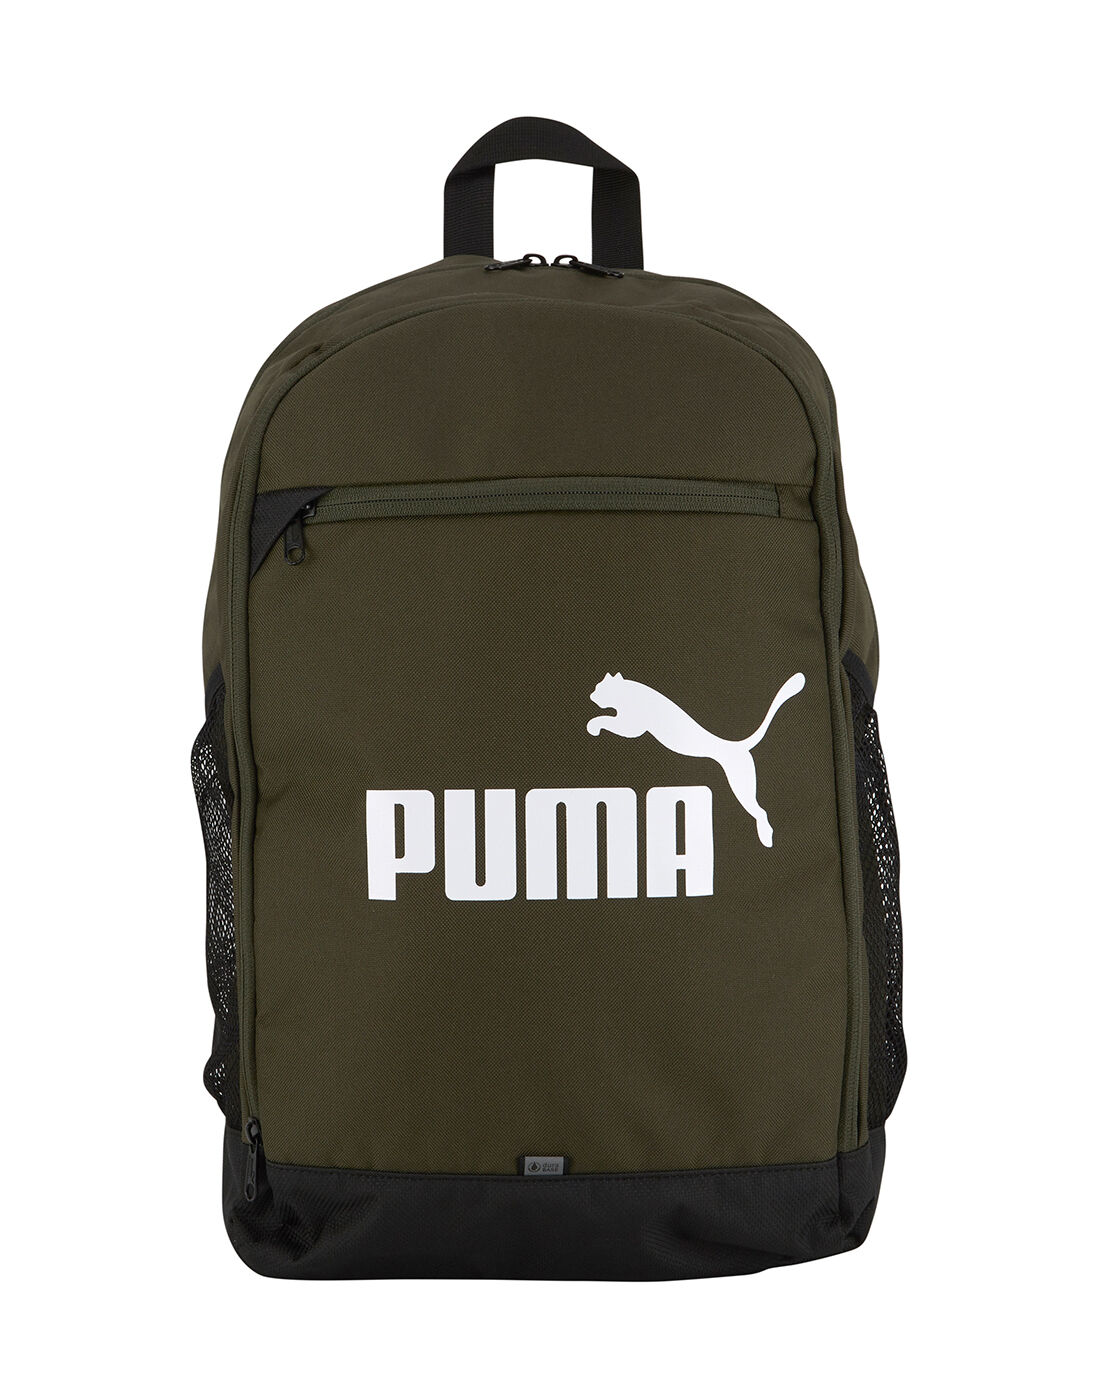 puma green bag